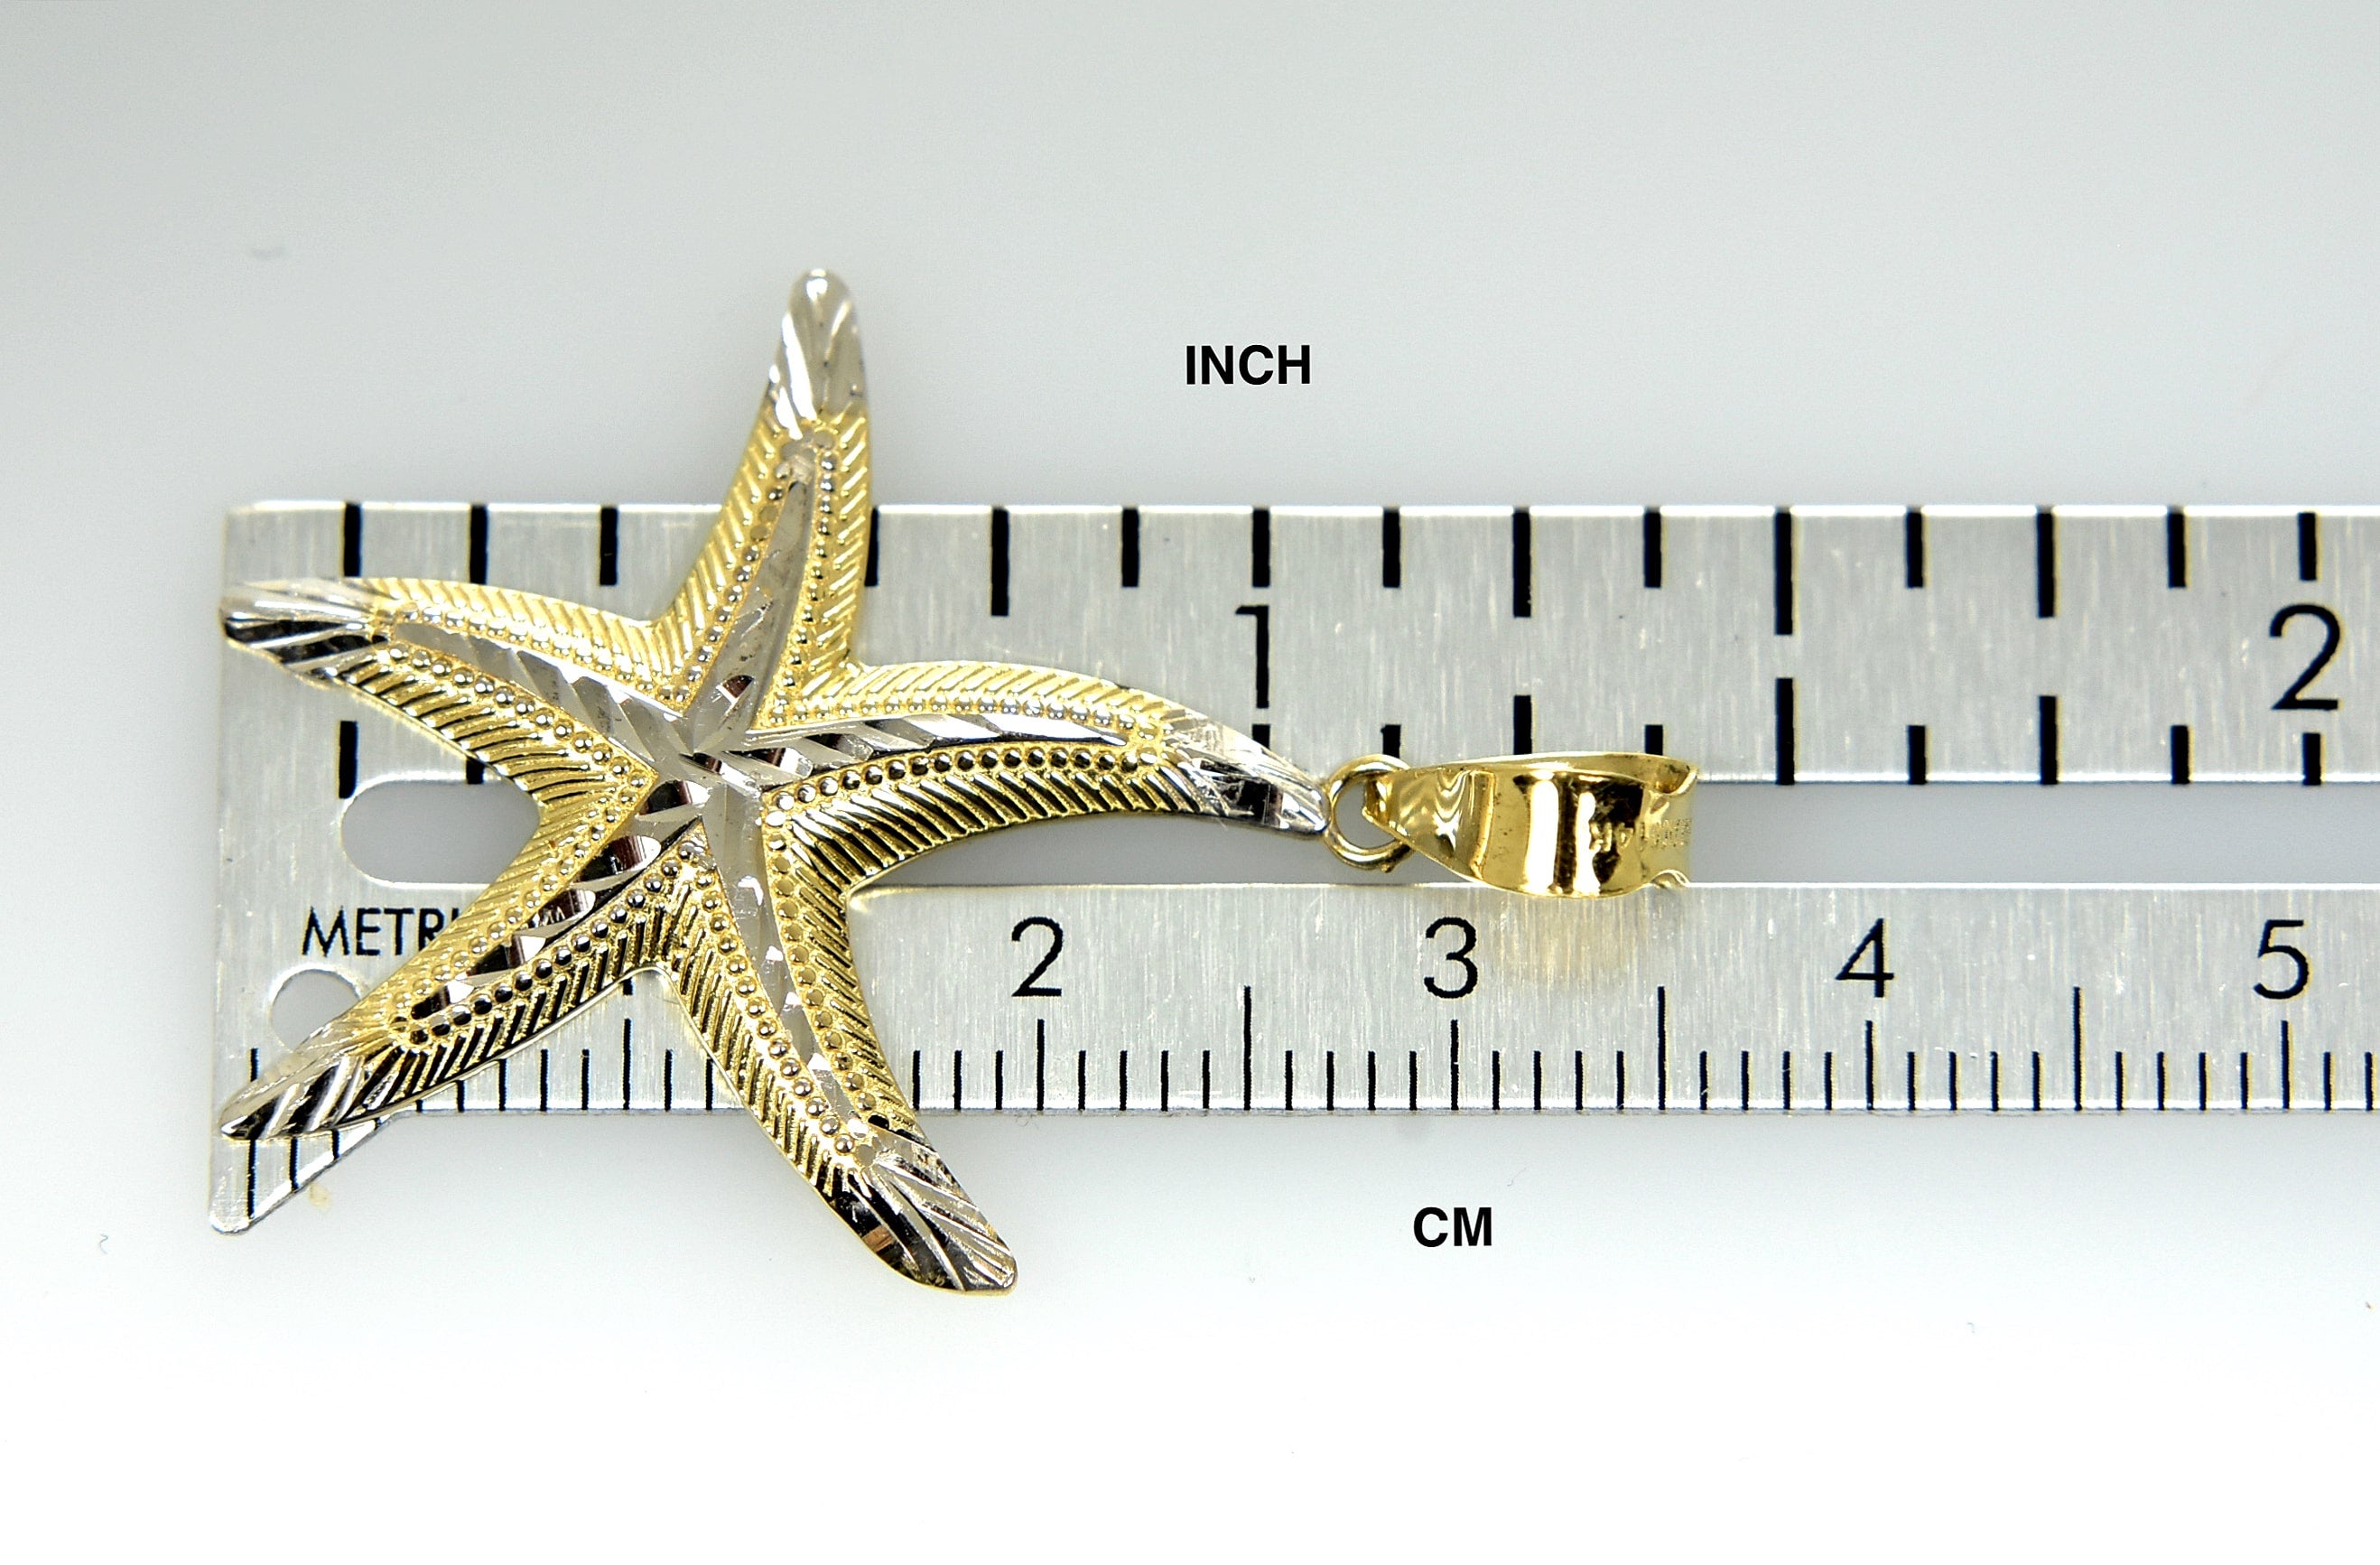 14k Yellow Gold and Rhodium Starfish Pendant Charm